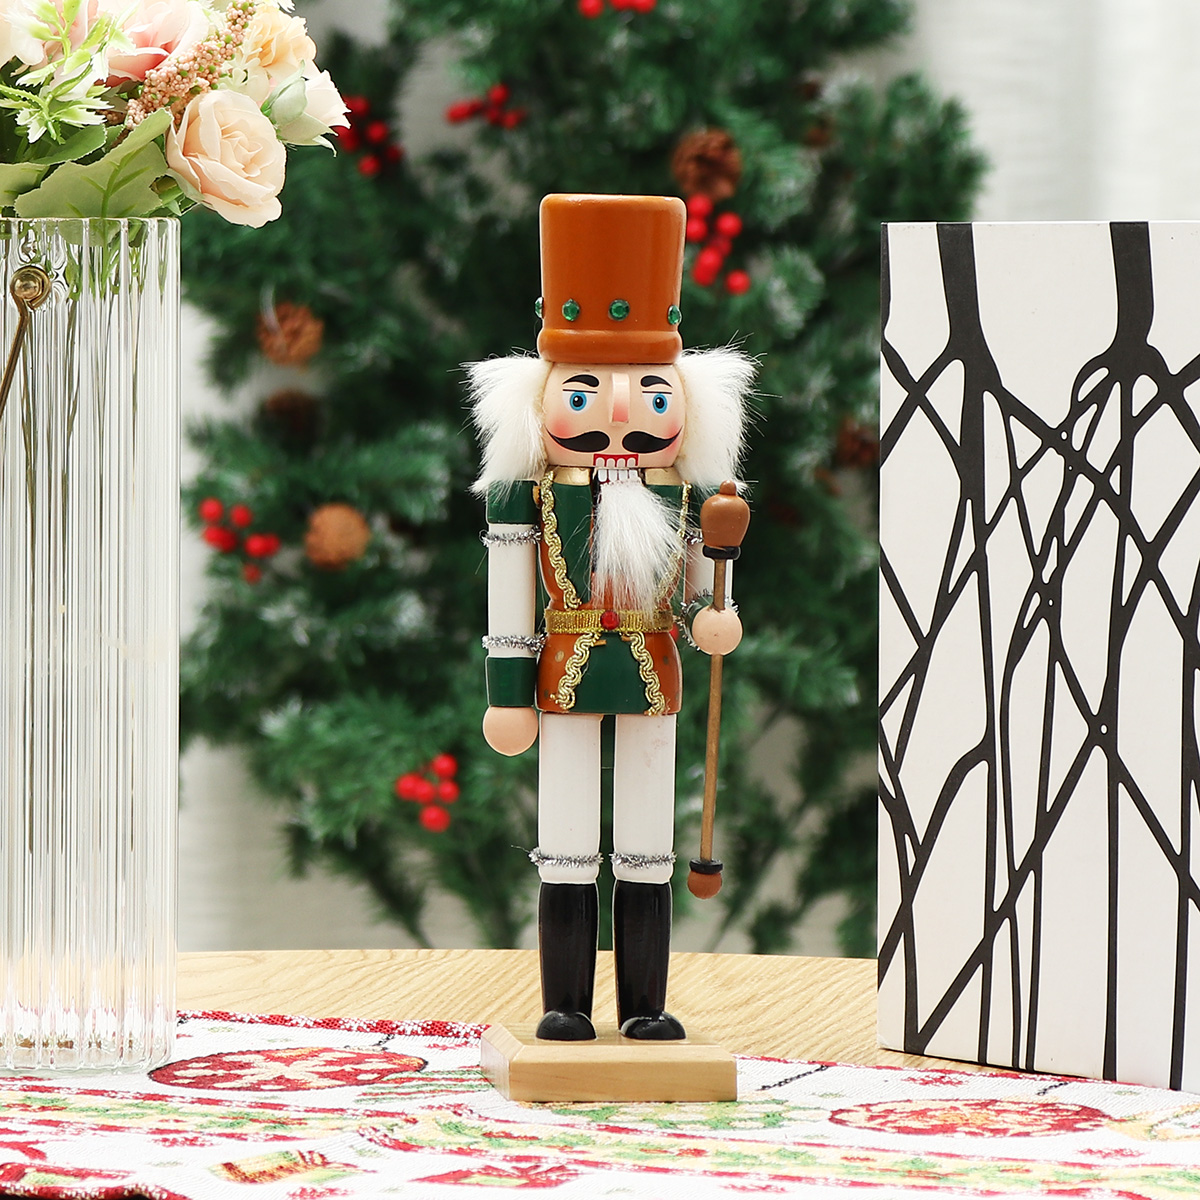 Christmas-Nutcracker-Soldier-Doll--Wooden-Puppet-Vintage-Desktop-Ornaments-25cm-Festival-Decoration-1767883-4